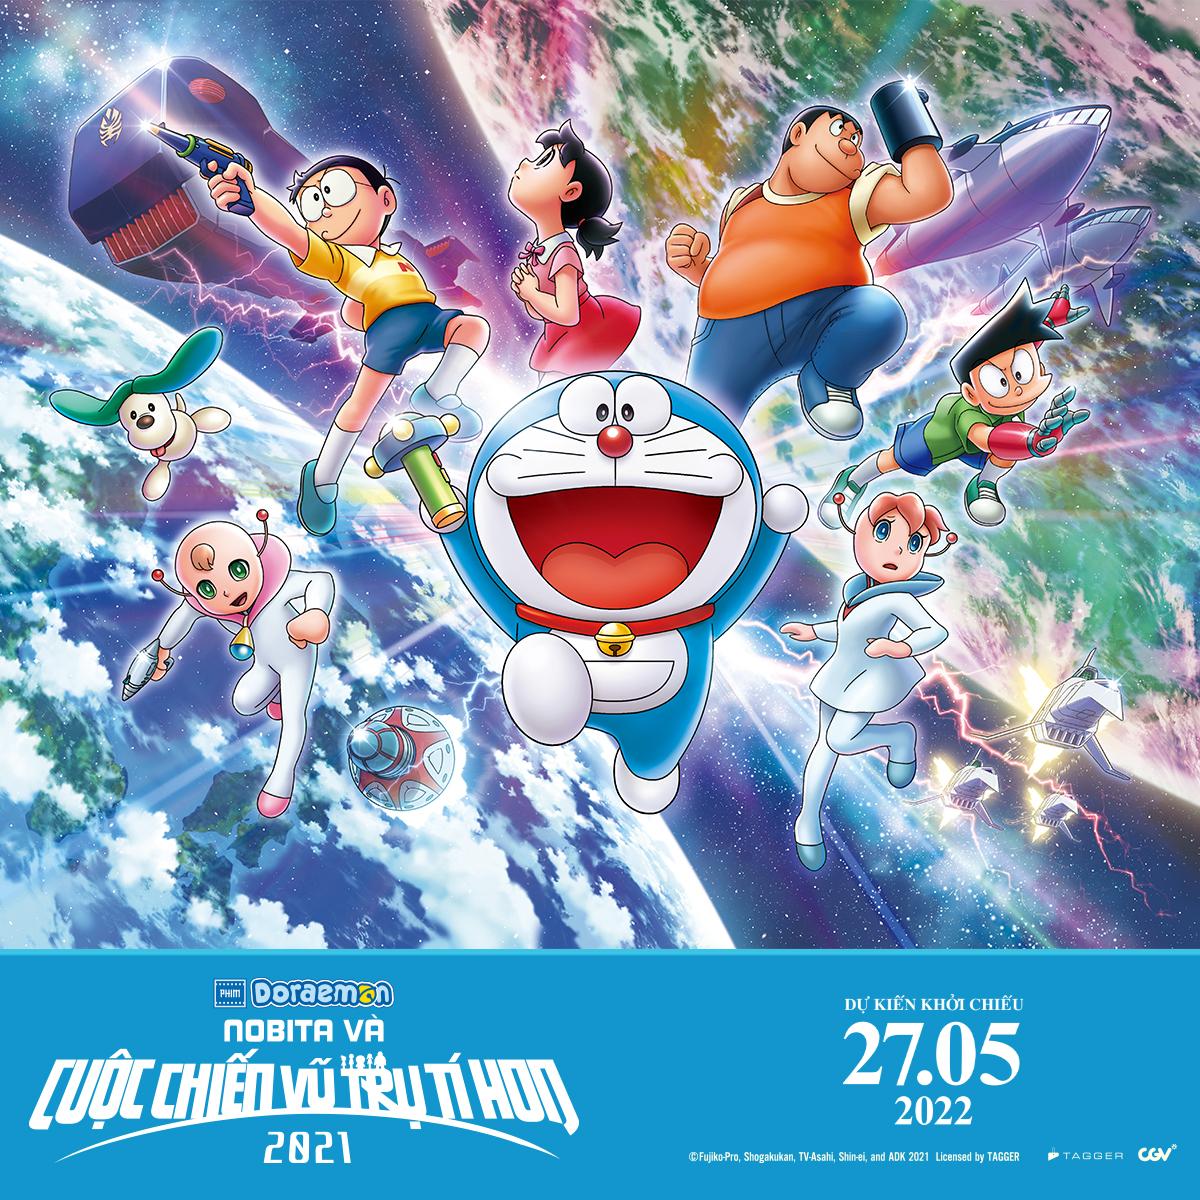 Đã bao lâu rồi bạn chưa khám phá thế giới Doraemon? Hãy cùng chú mèo máy thông minh khám phá vũ trụ huyền bí và tìm hiểu về những chiếc cỗ máy thời gian huyền thoại. Với bộ phim Thế giới Doraemon, bạn sẽ có một trải nghiệm thú vị và phấn khích.